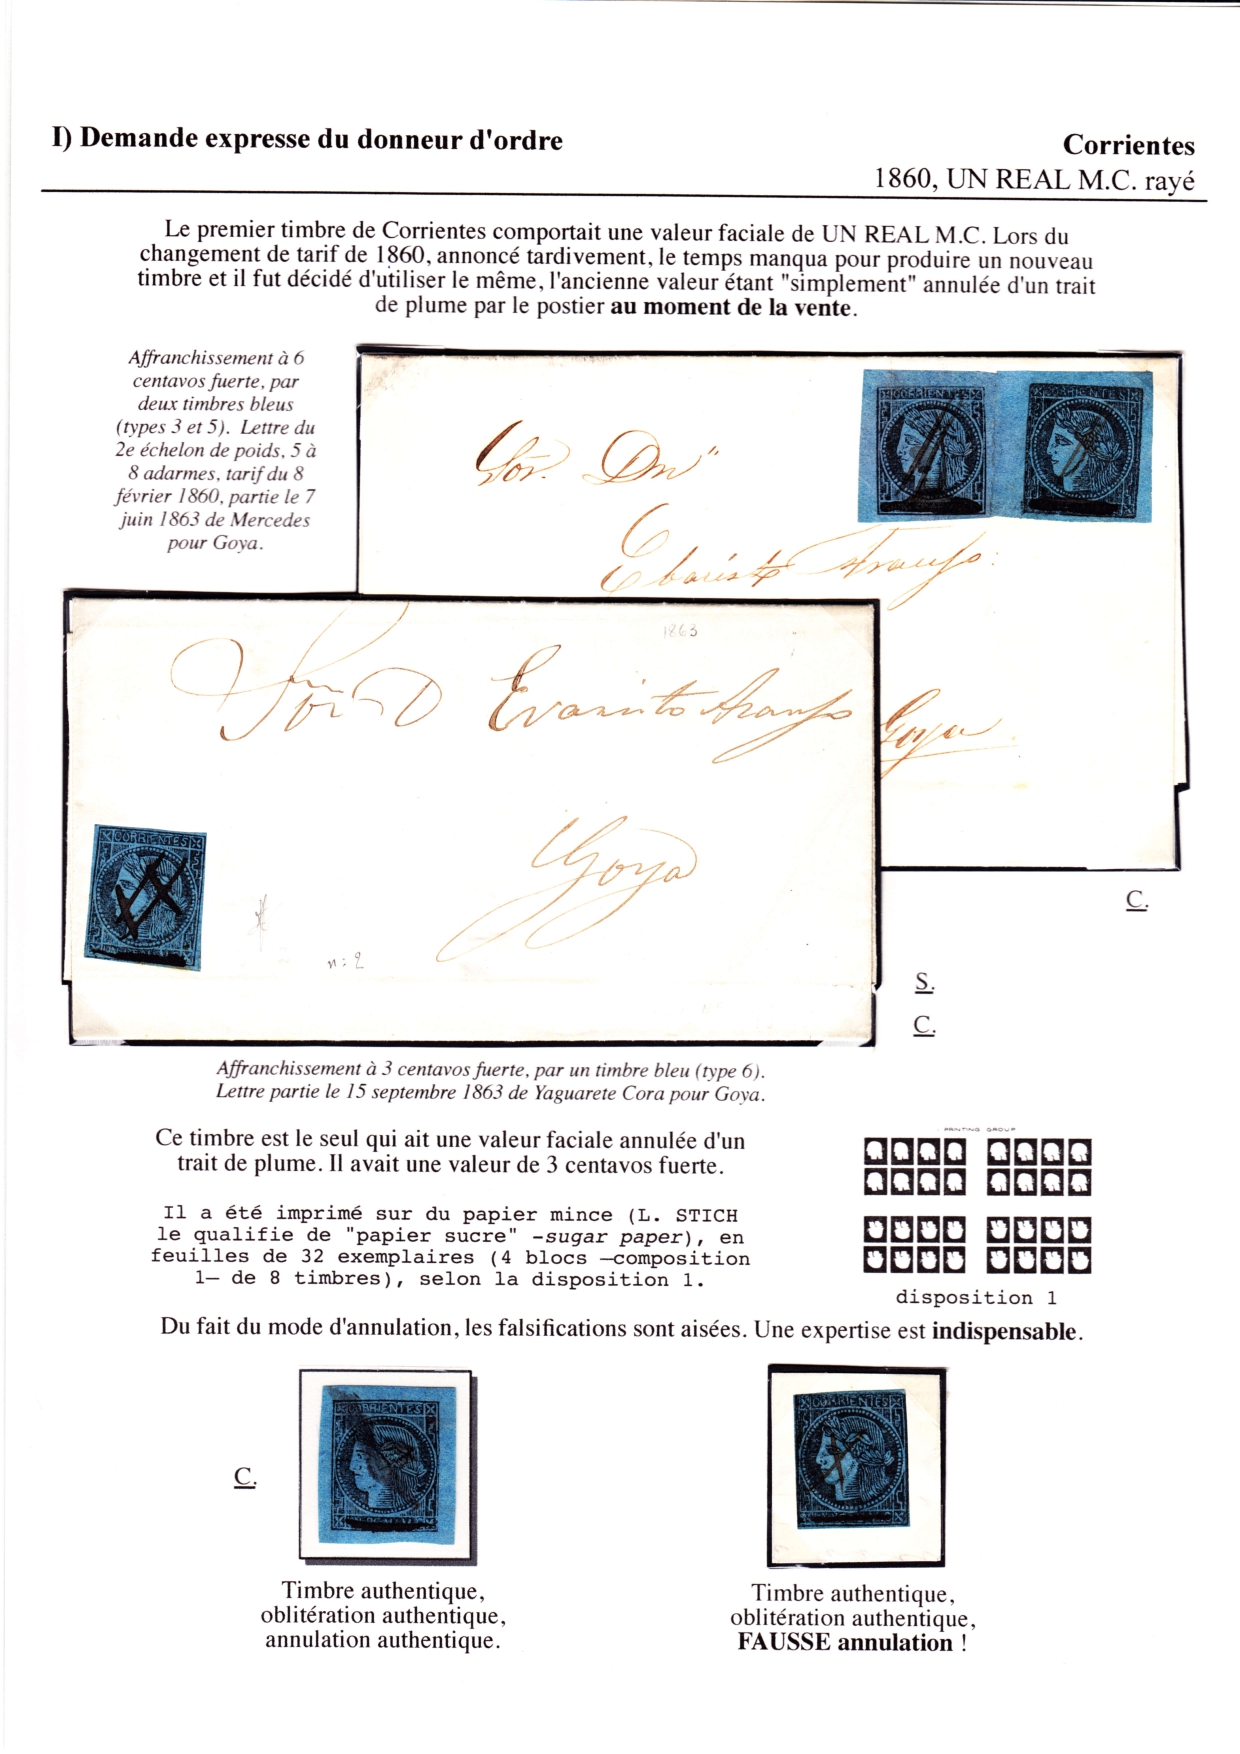 Les d��buts des timbres sans valeur faciale apparente p. 16